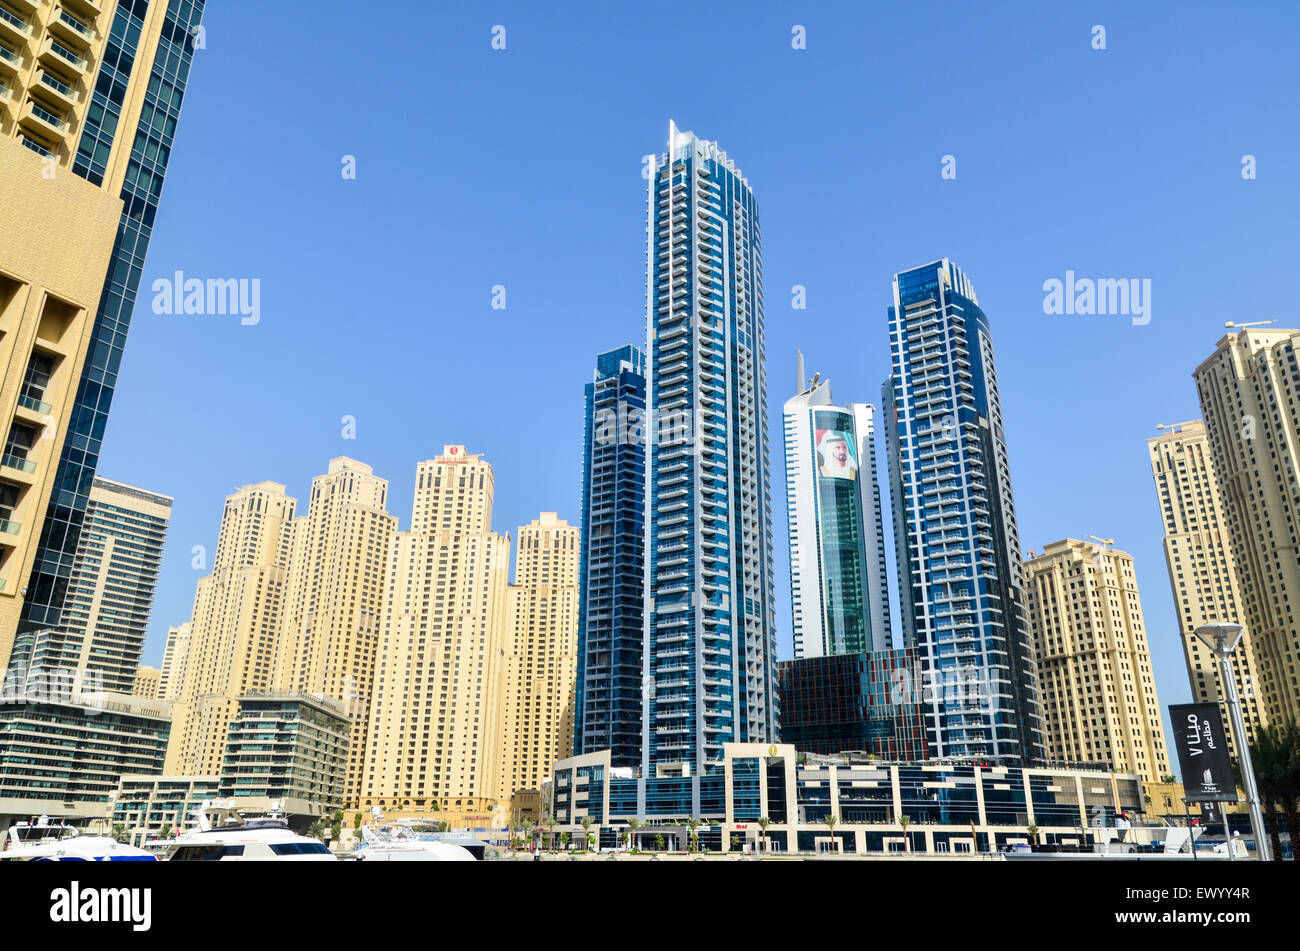 Futurista y edificios altos, las torres y los hoteles del puerto deportivo de Dubai, Emiratos Árabes Unidos Foto de stock